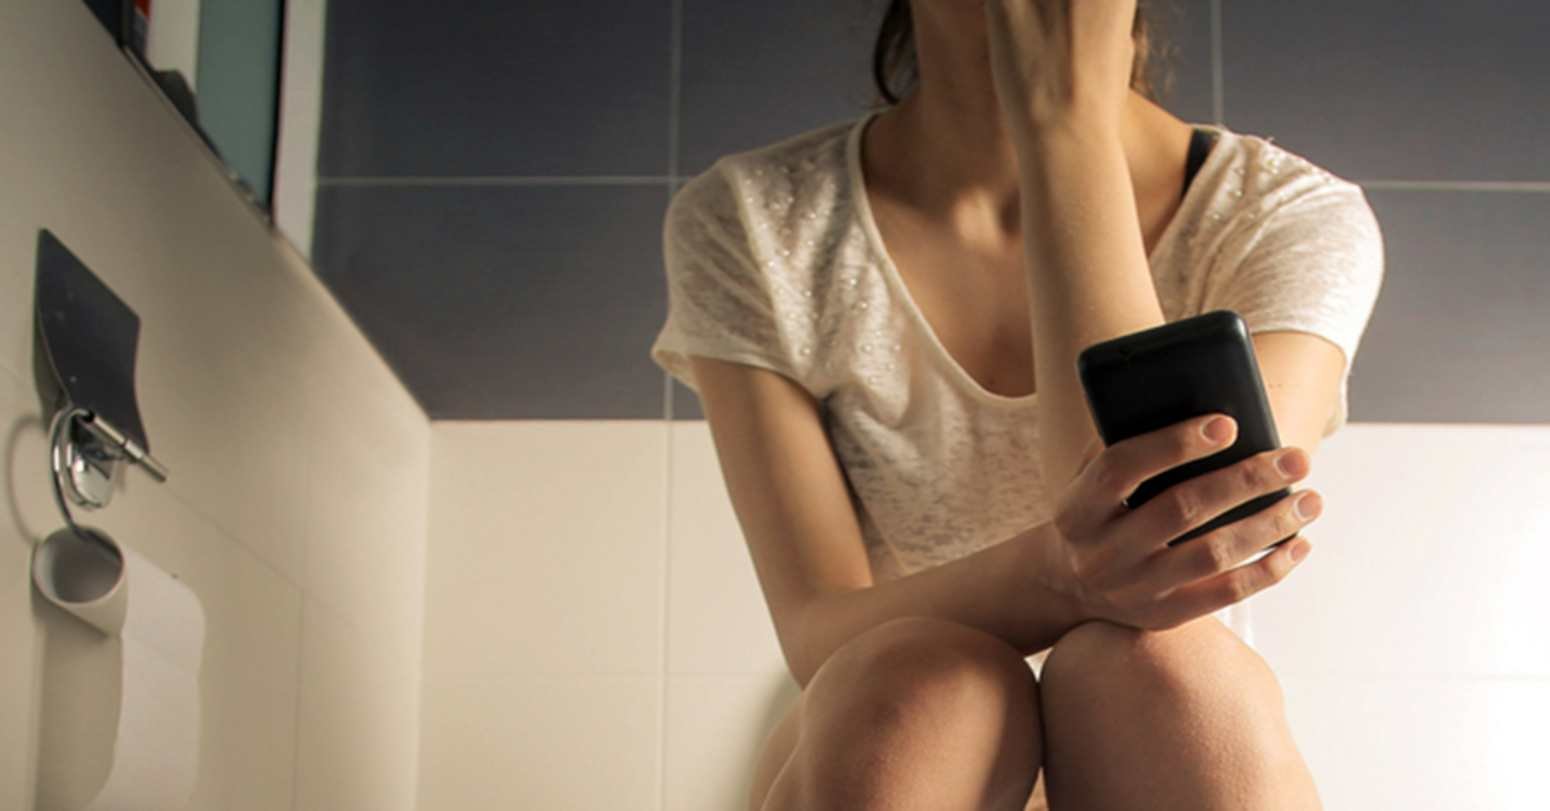 के तपाई पनि शौचालयमा मोबाइल फोन प्रयोग गर्नुहुन्छ ? स्वास्थ्यमा हानी गर्छ है